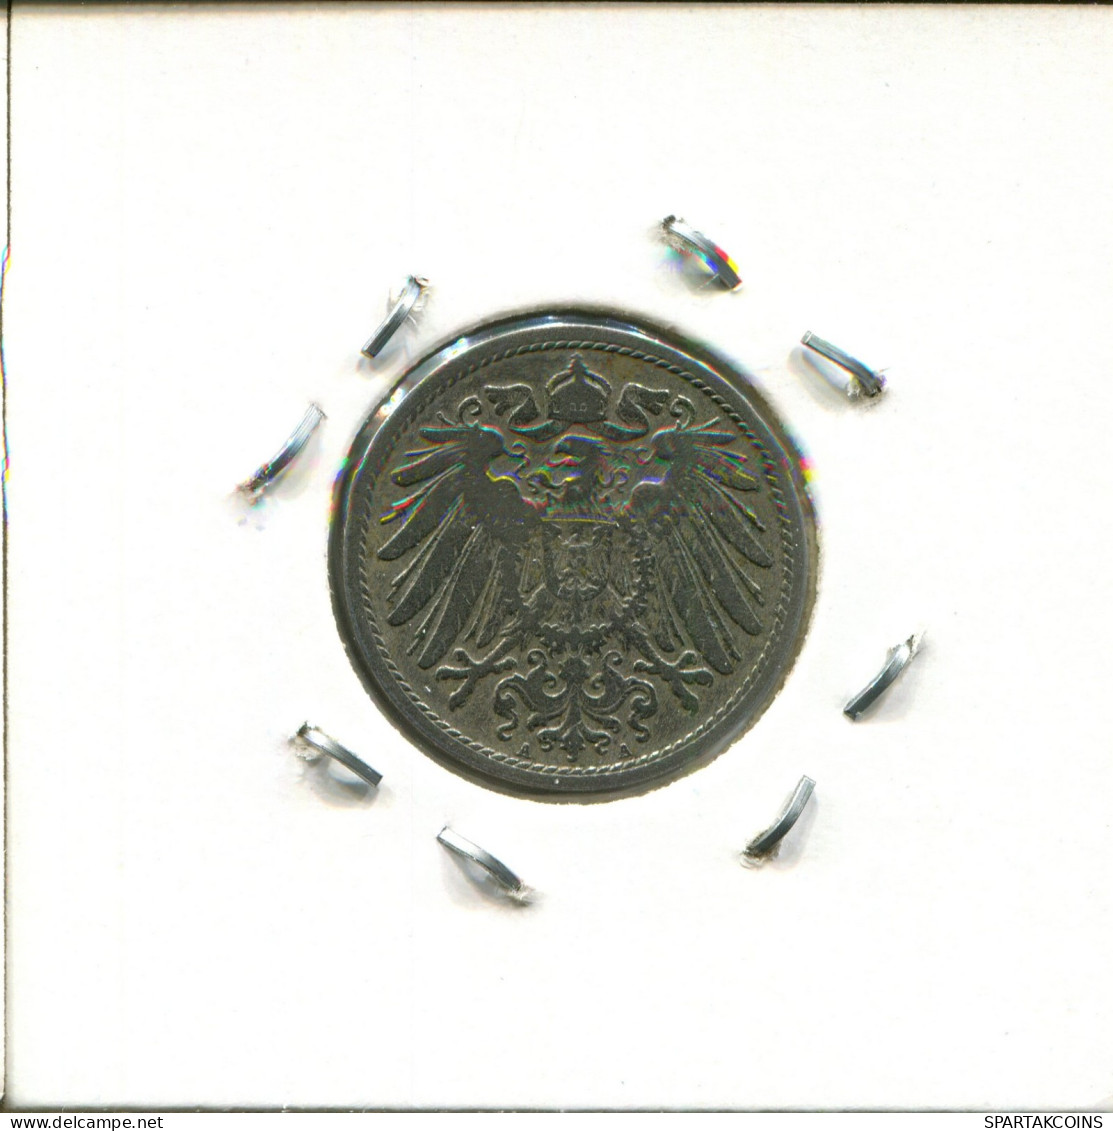 10 PFENNIG 1901 A DEUTSCHLAND Münze GERMANY #DA638.2.D.A - 10 Pfennig